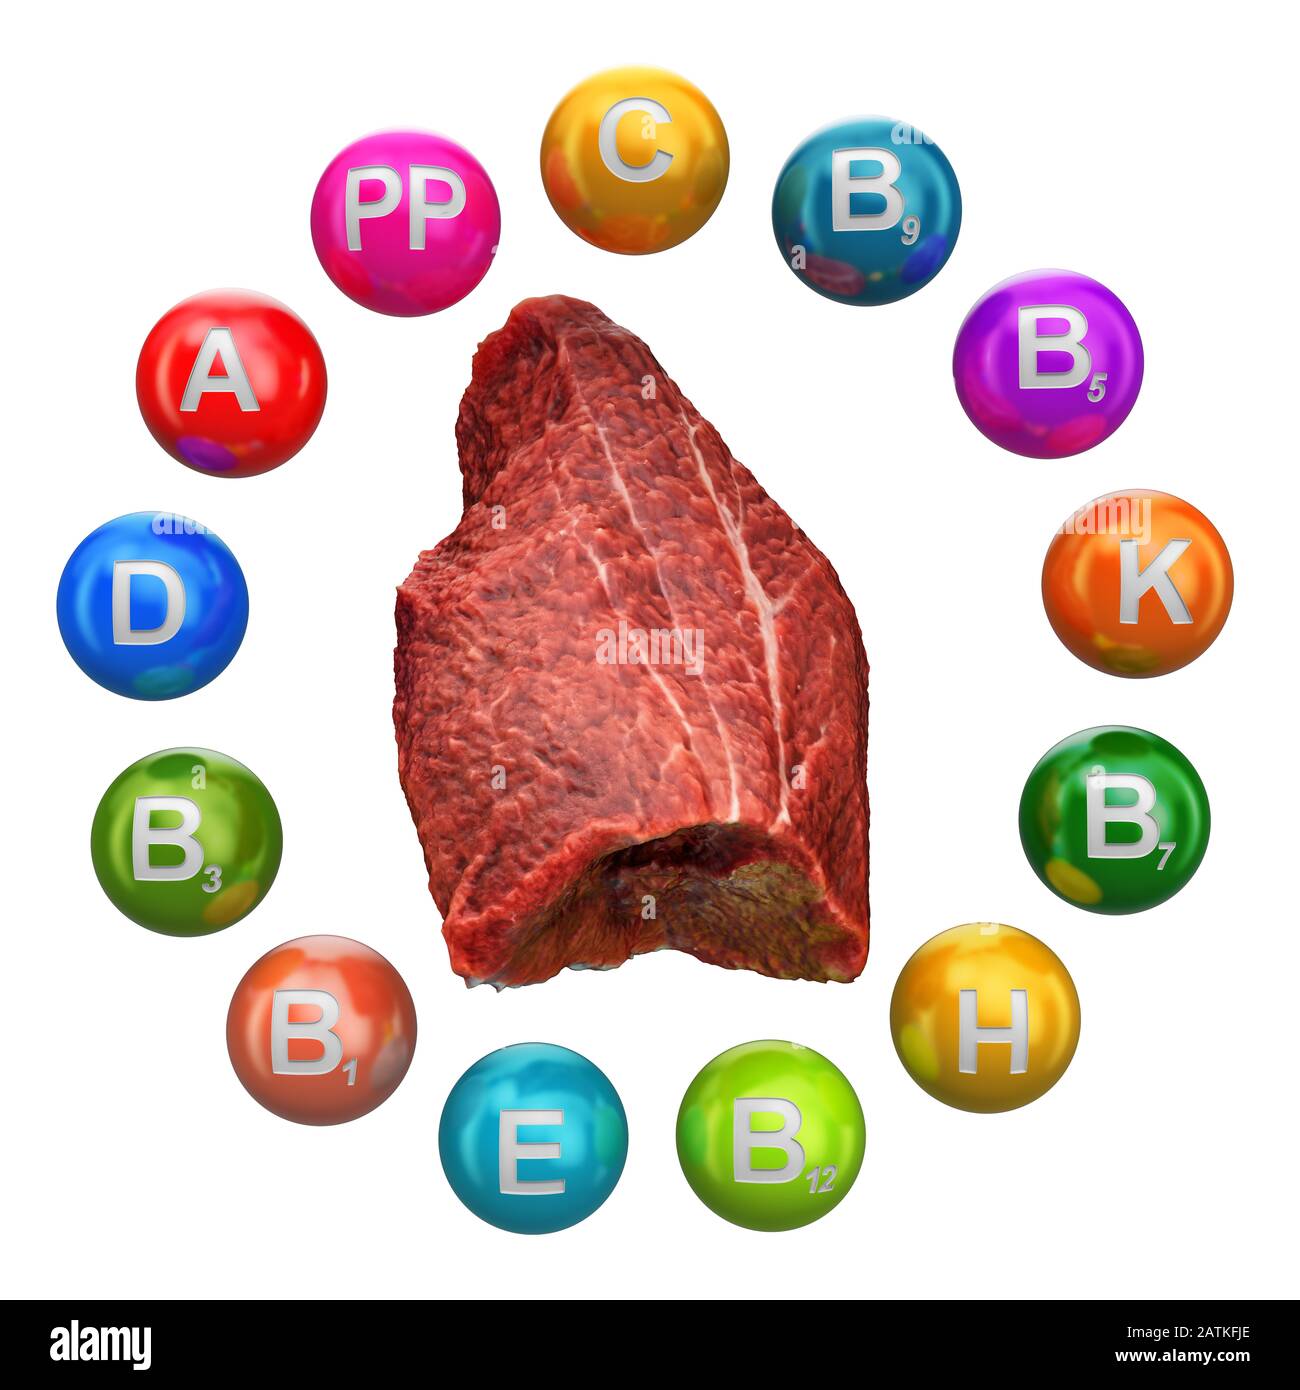 Vitamines dans la viande de boeuf, rendu tridimensionnel isolé sur fond blanc Banque D'Images